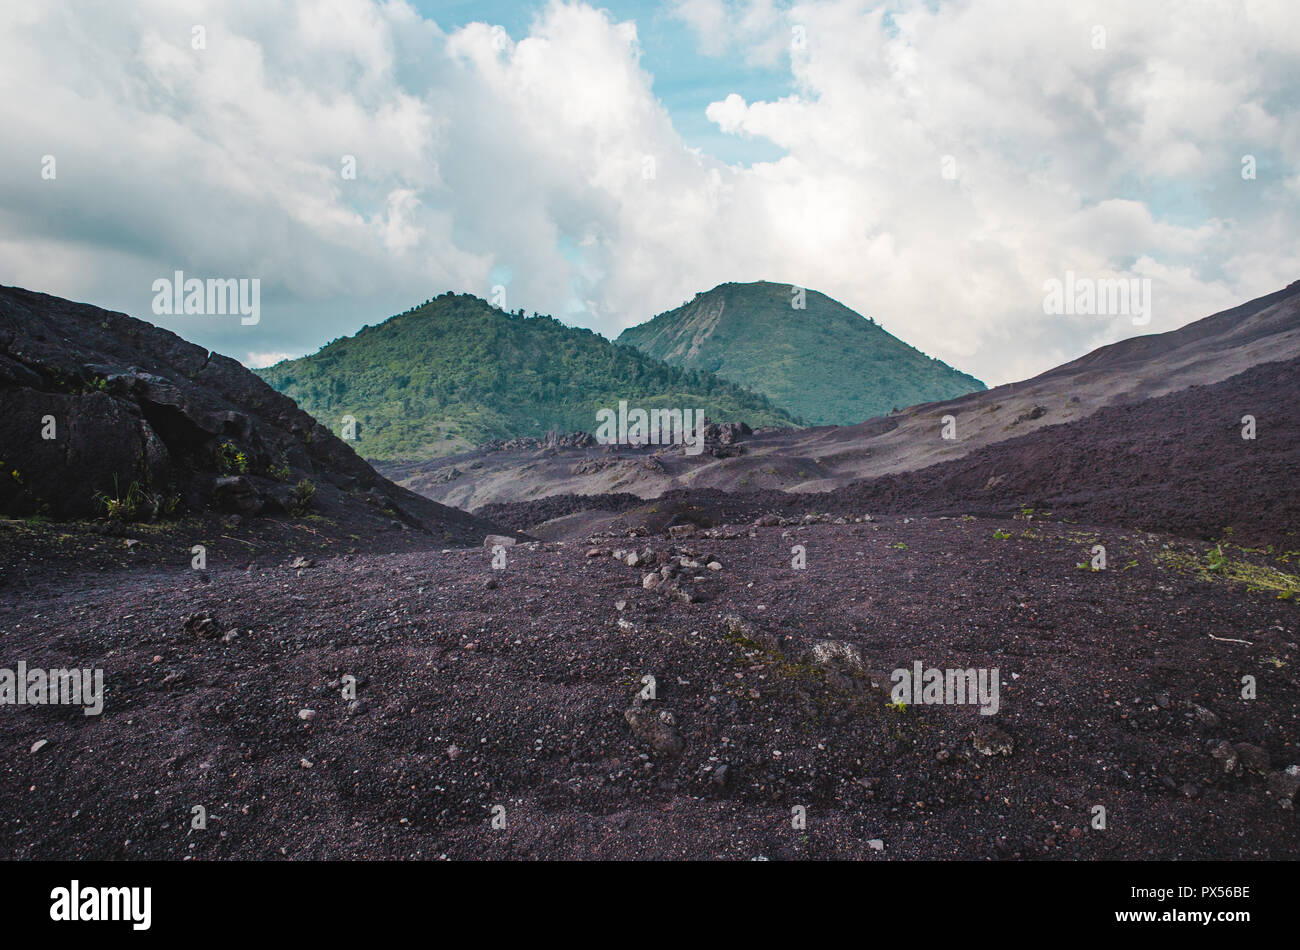 Paisajes cambiantes alrededor del Volcán Pacaya, uno de los volcanes más activos de Guatemala, de roca volcánica negra de exuberantes bosques verdes Foto de stock